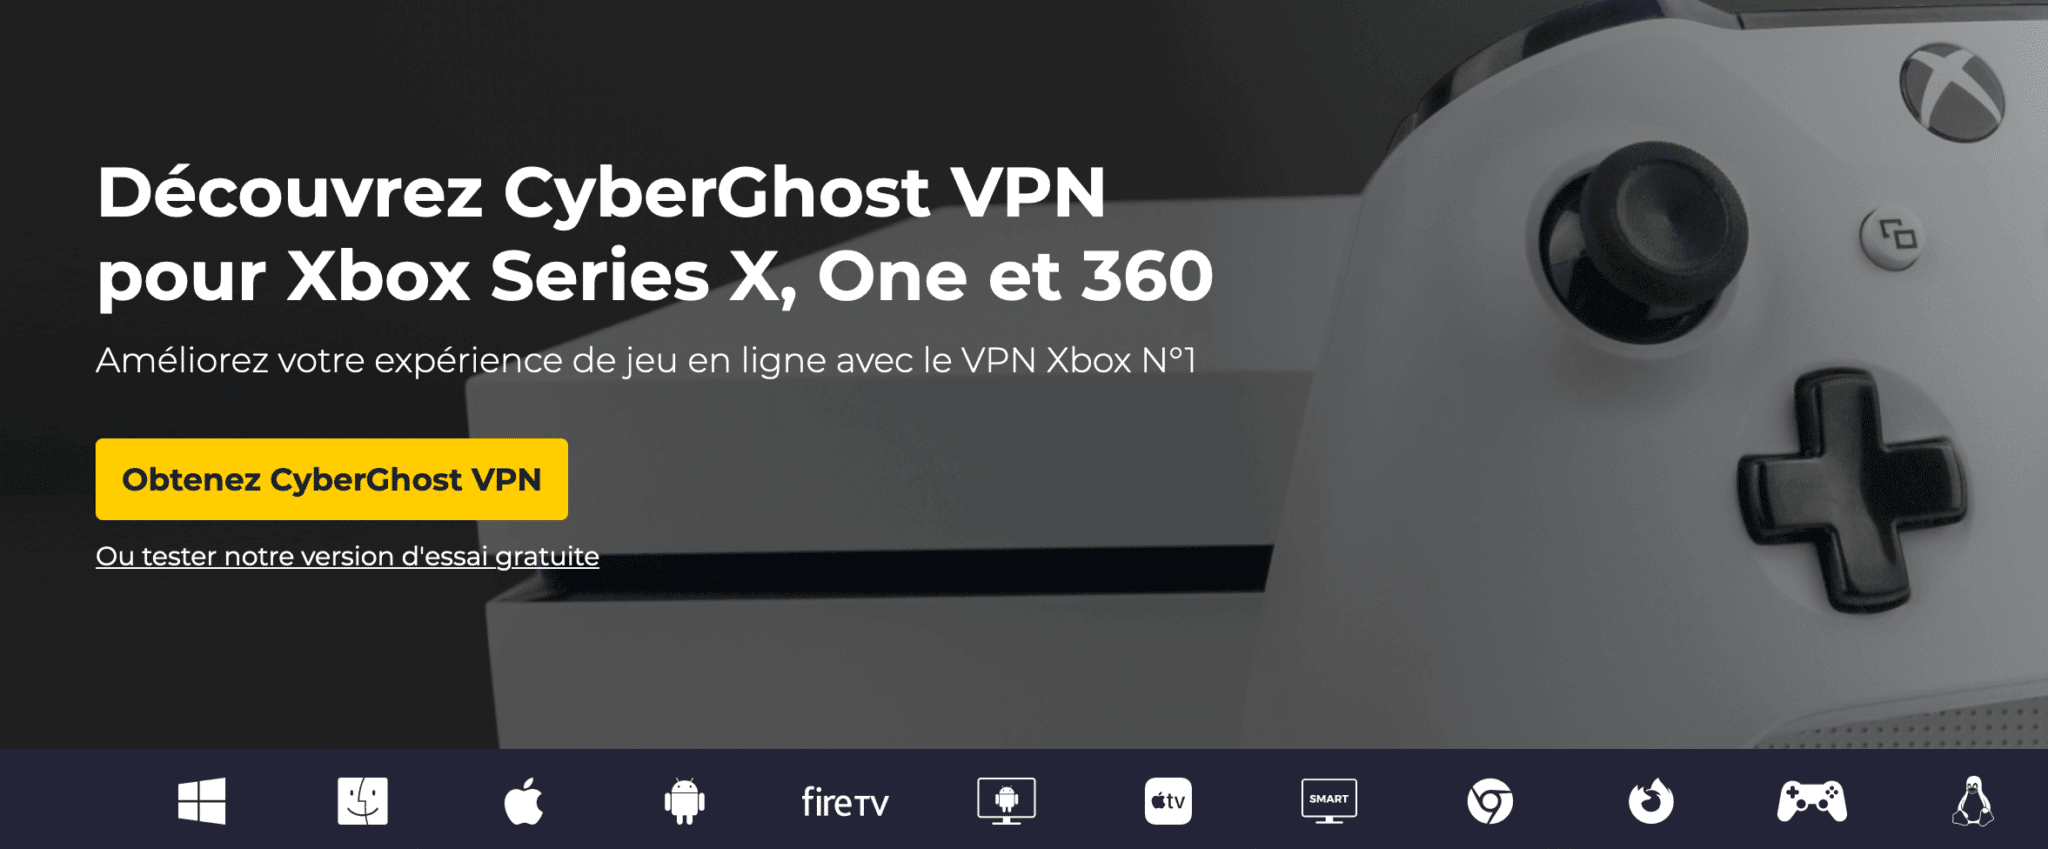 CyberGhost VPN pour Xbox